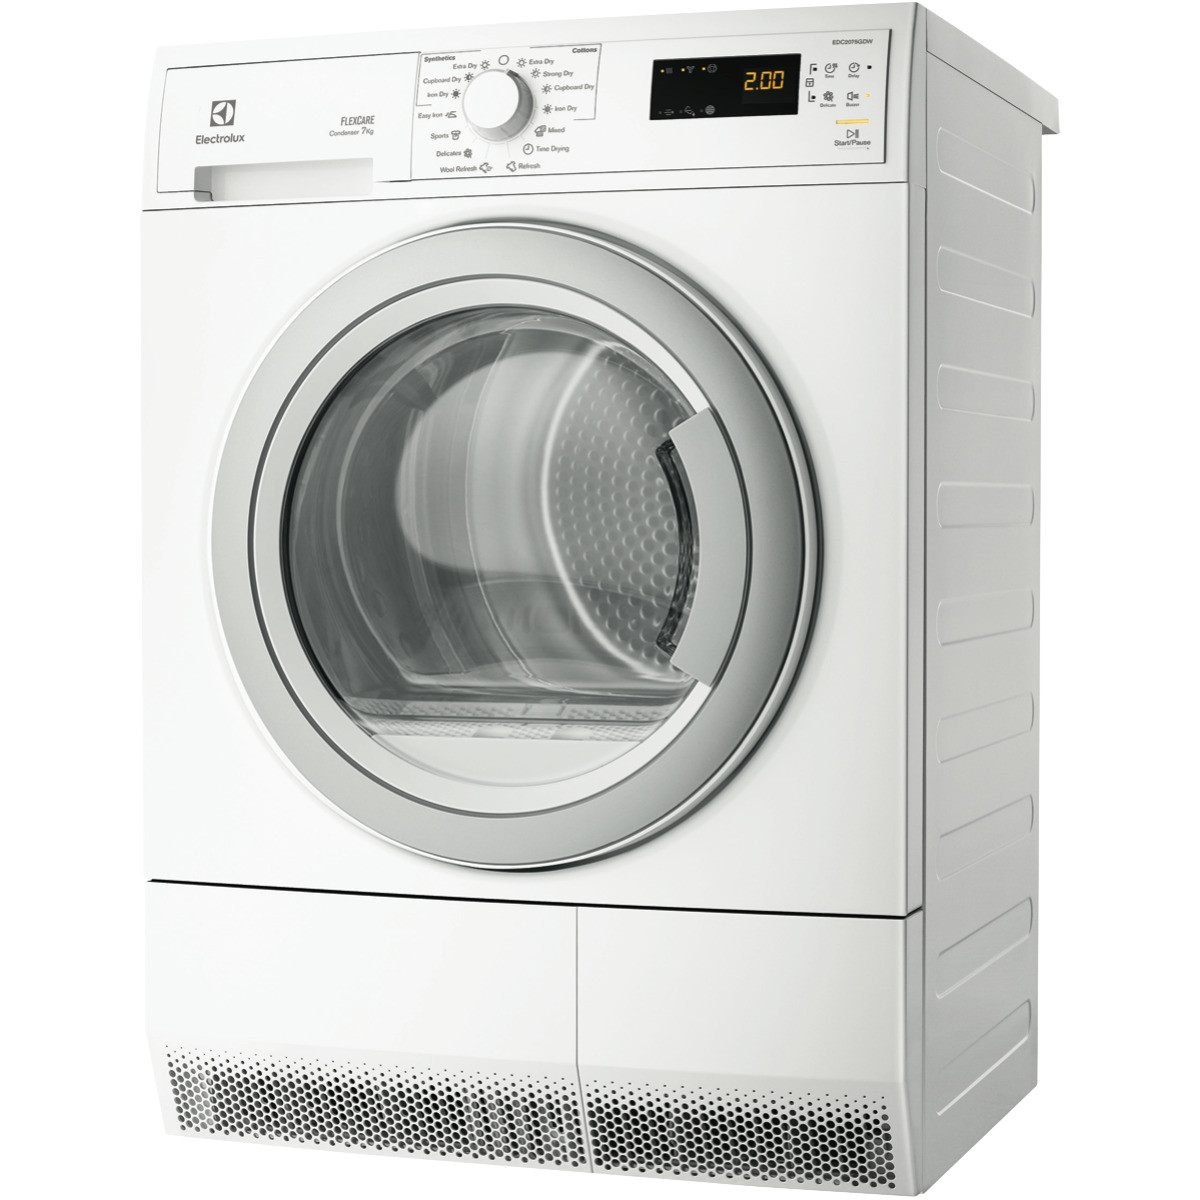 Sub Zero Refrigerator Repair Houston Washer Dryer Repair In Houston Tx Dryer Machine and Drum Repair